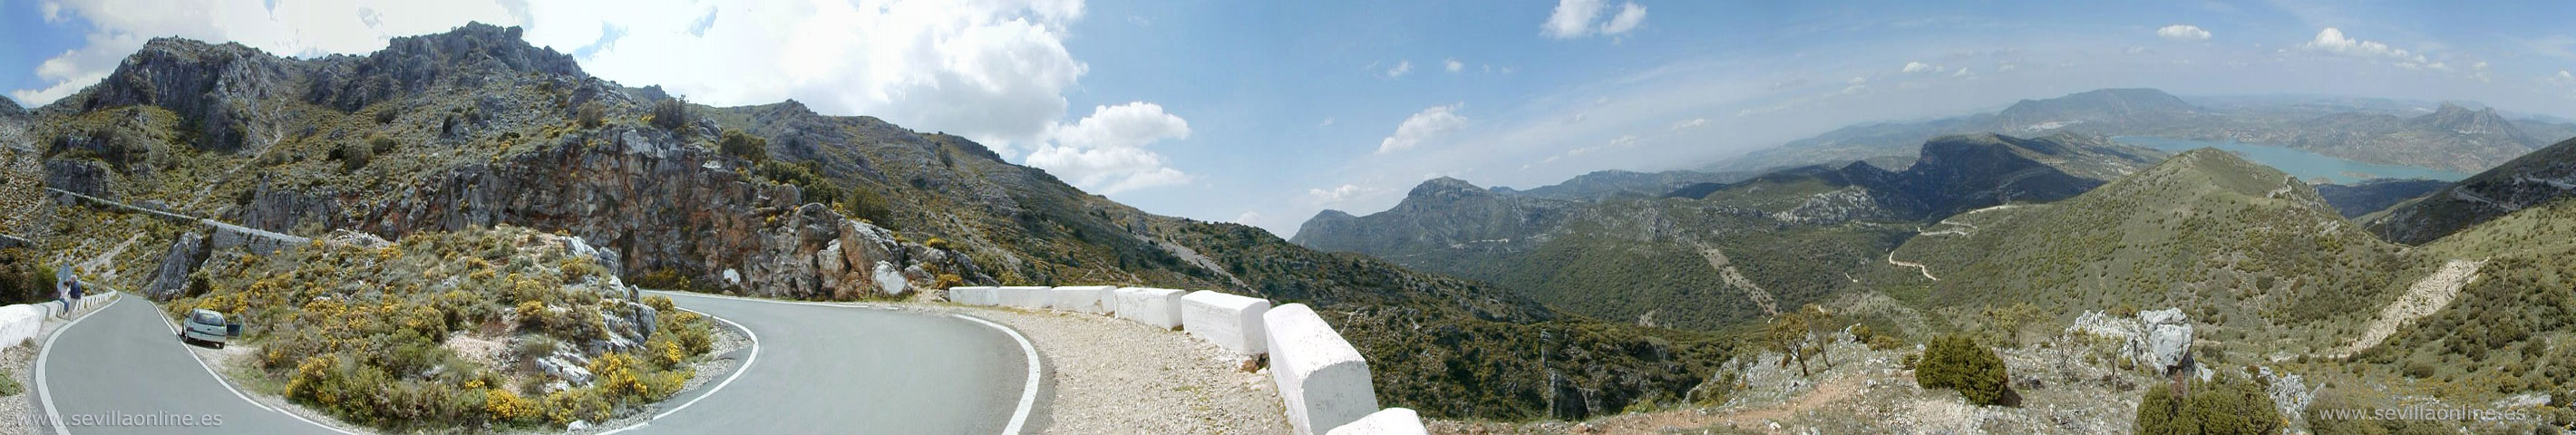 Haarspeldbochten in het natuurgebied Sierra de Grazalema, provincie Cadiz - Andalusië, Spanje. 